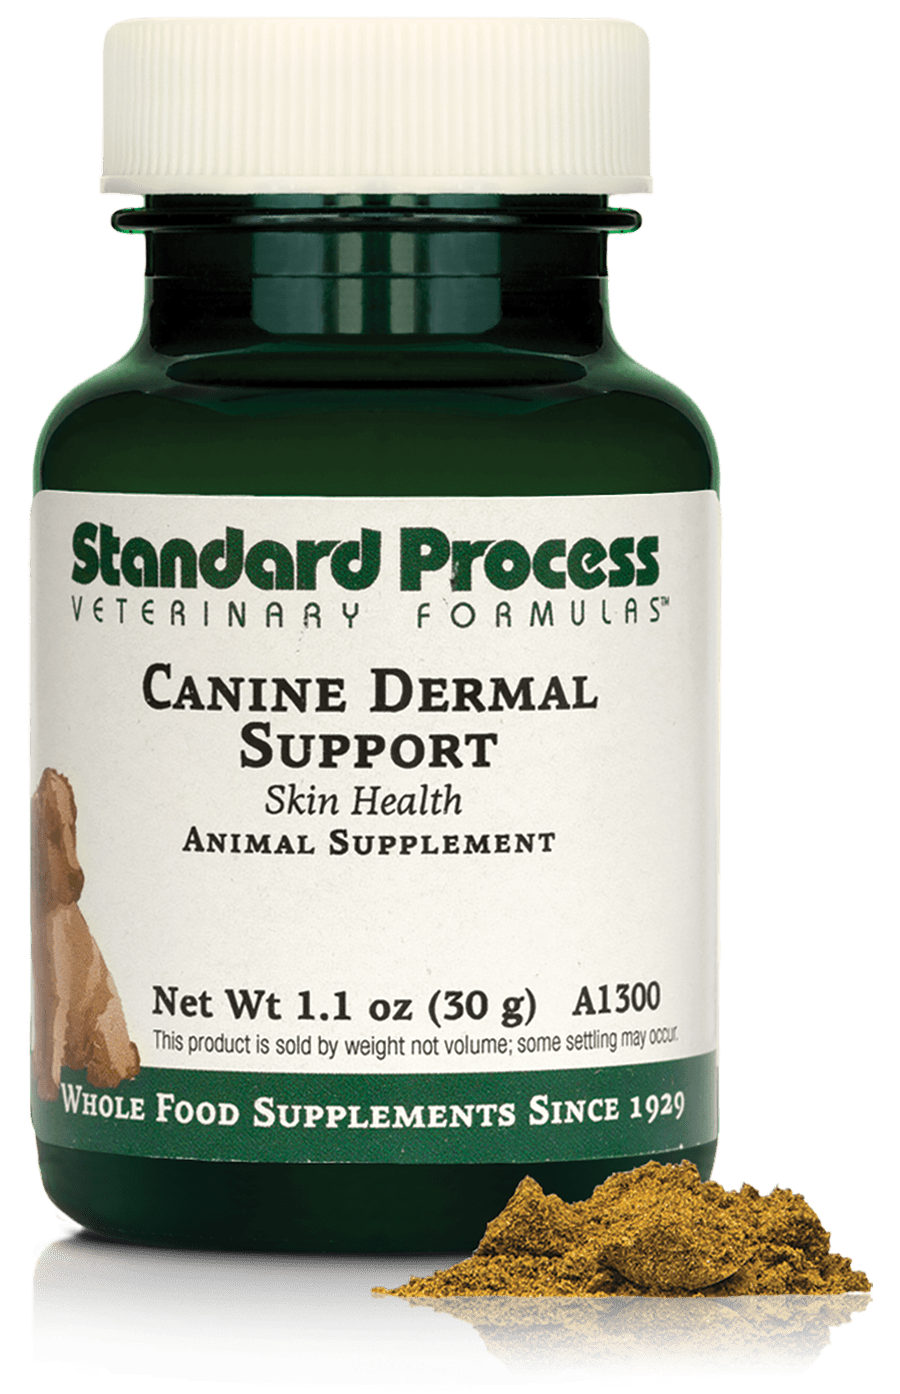 Canine Dermal Support supplement bottles